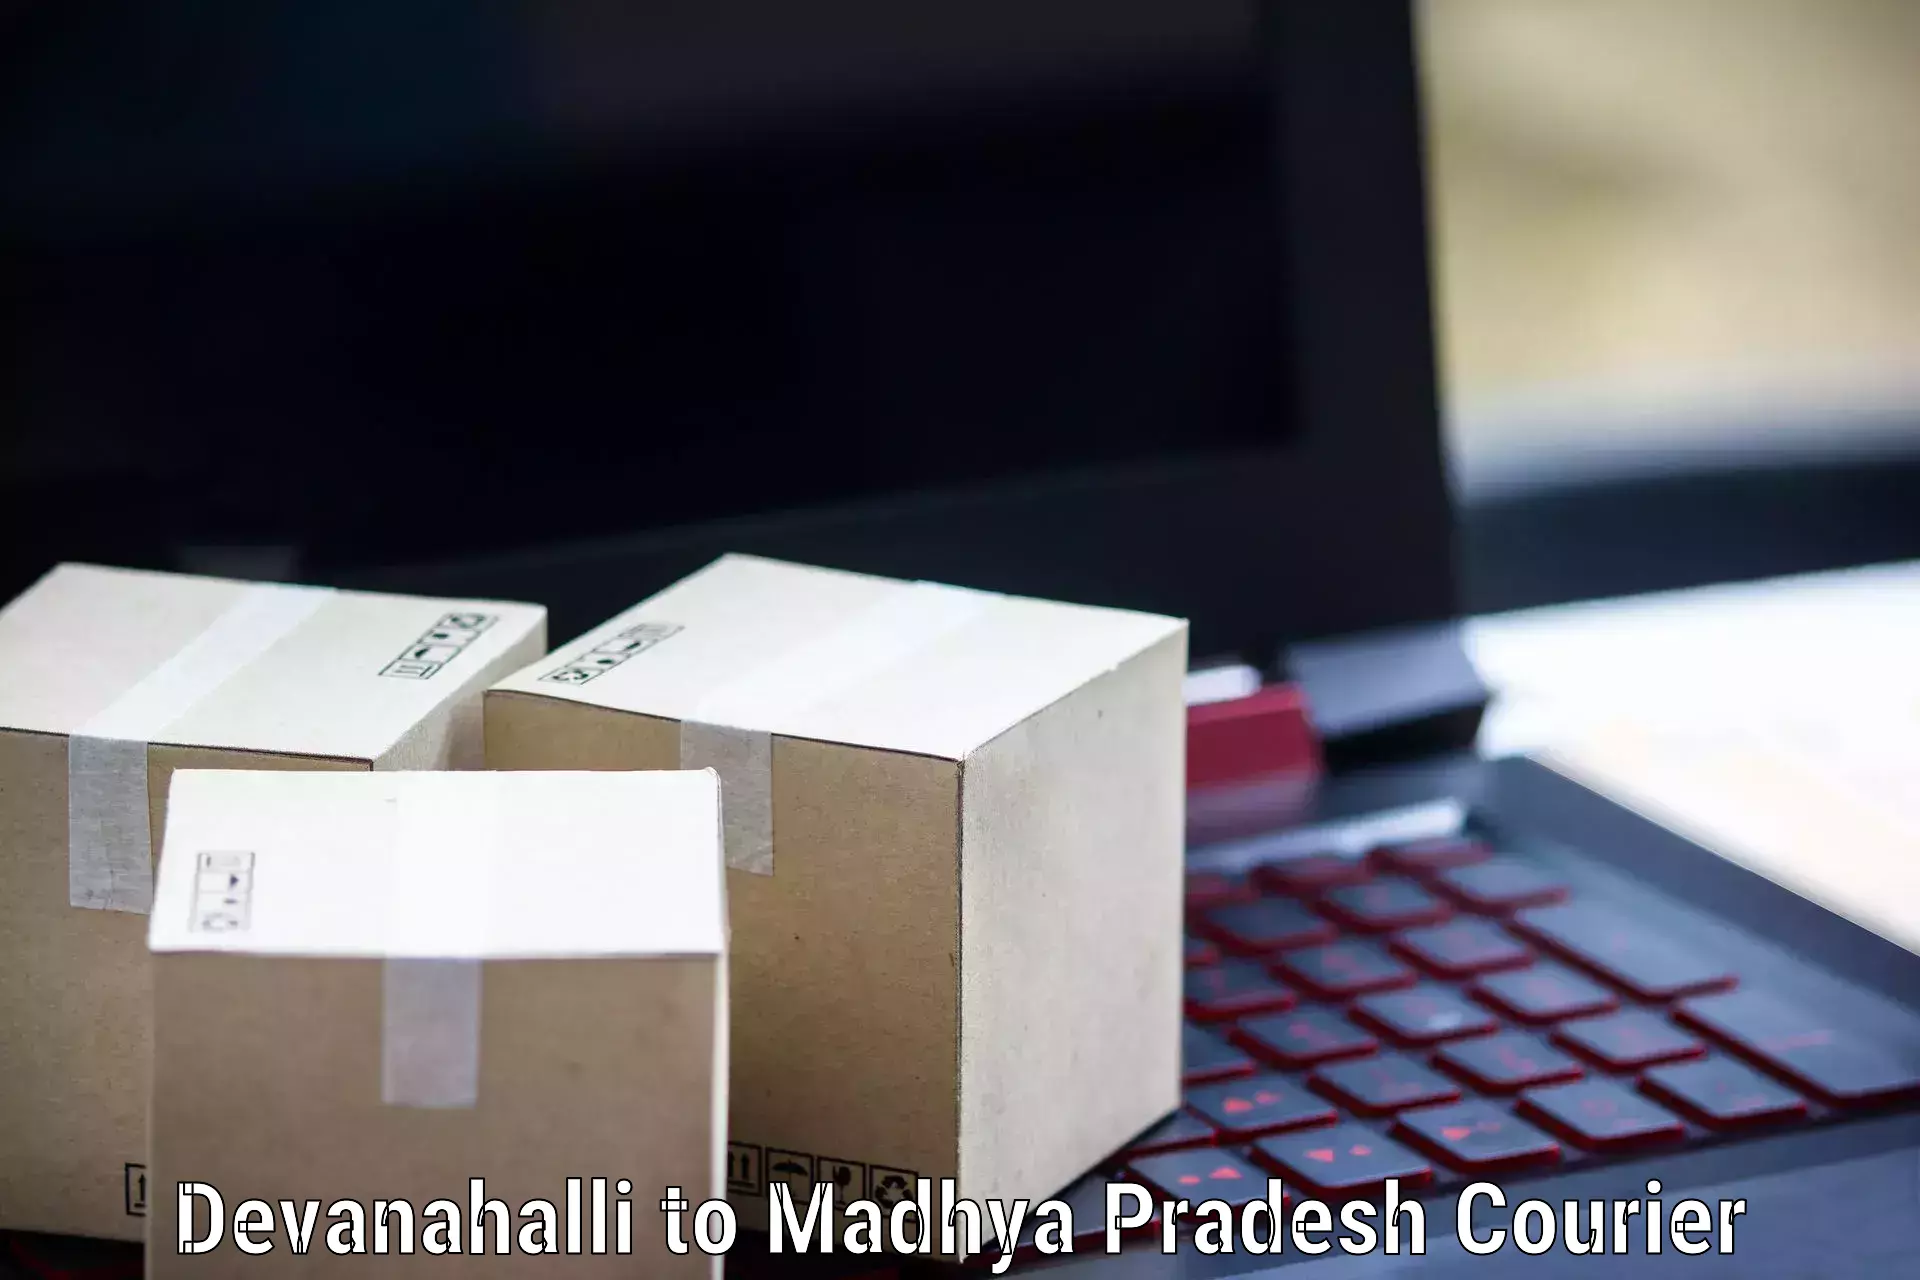 On-demand shipping options Devanahalli to Nagda